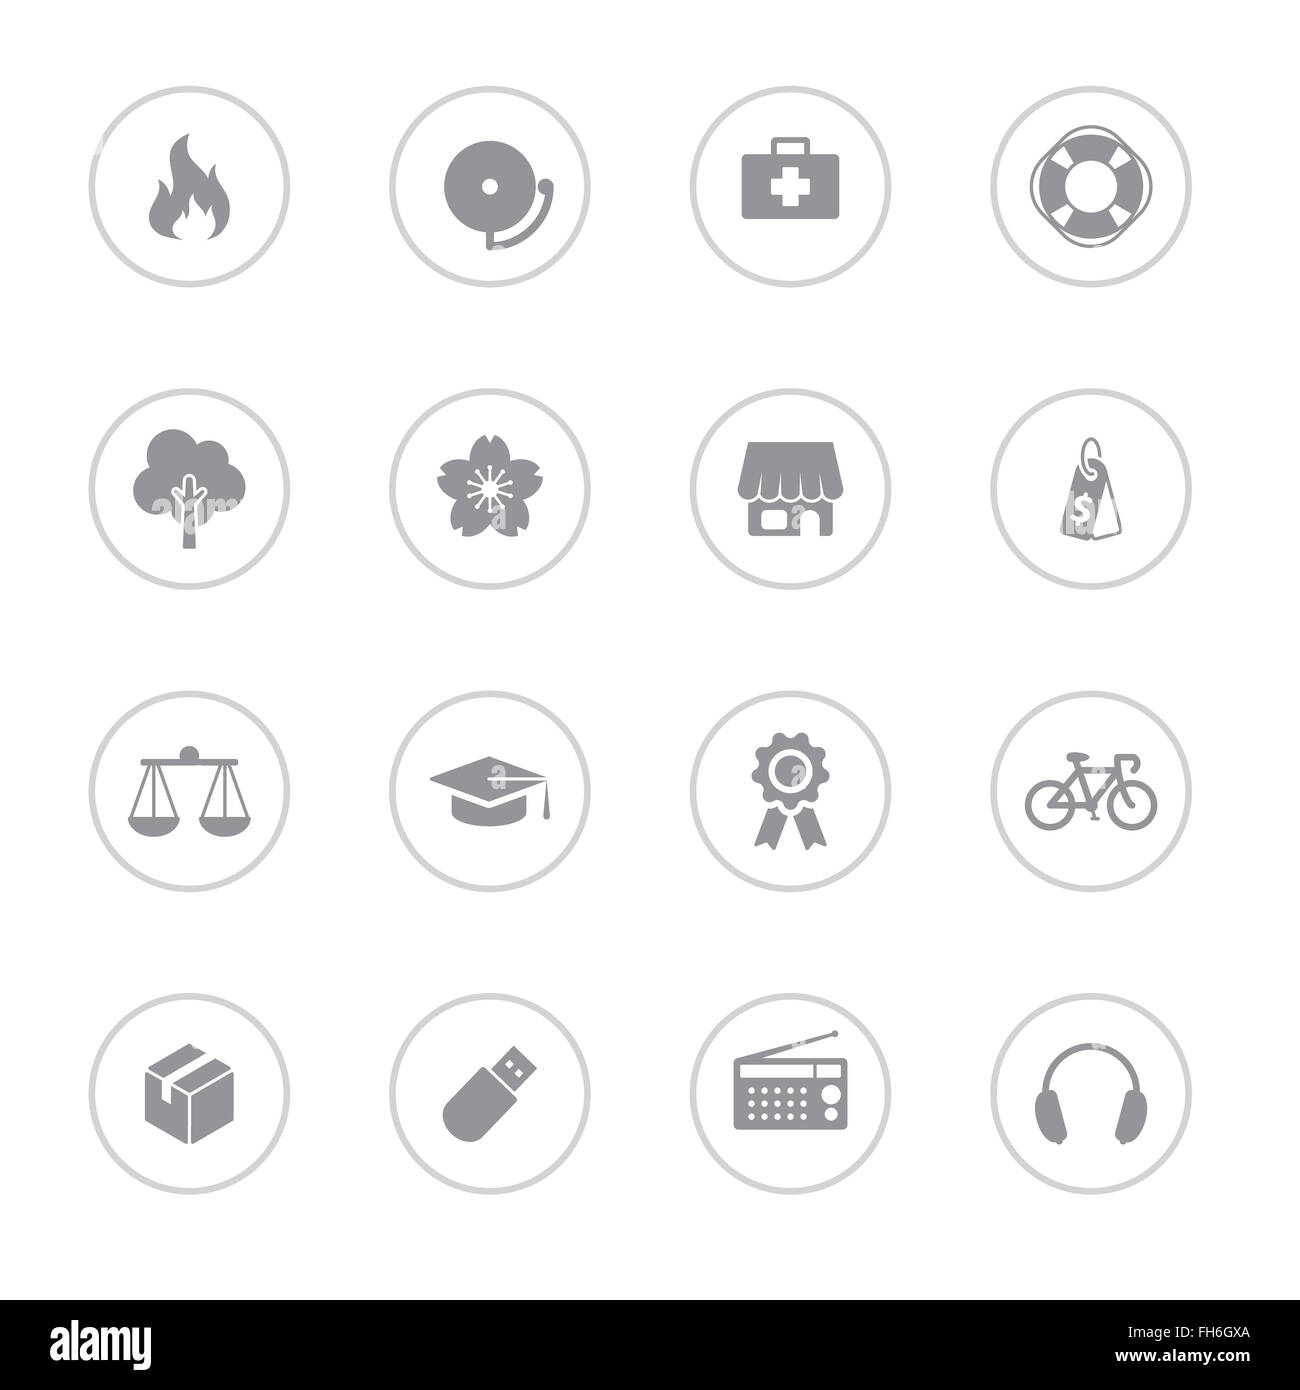 [JPEG] télévision simple gris icon set 6 avec châssis circulaire pour le web design, l'interface utilisateur, l'infographie et de l'application mobile (apps) Banque D'Images